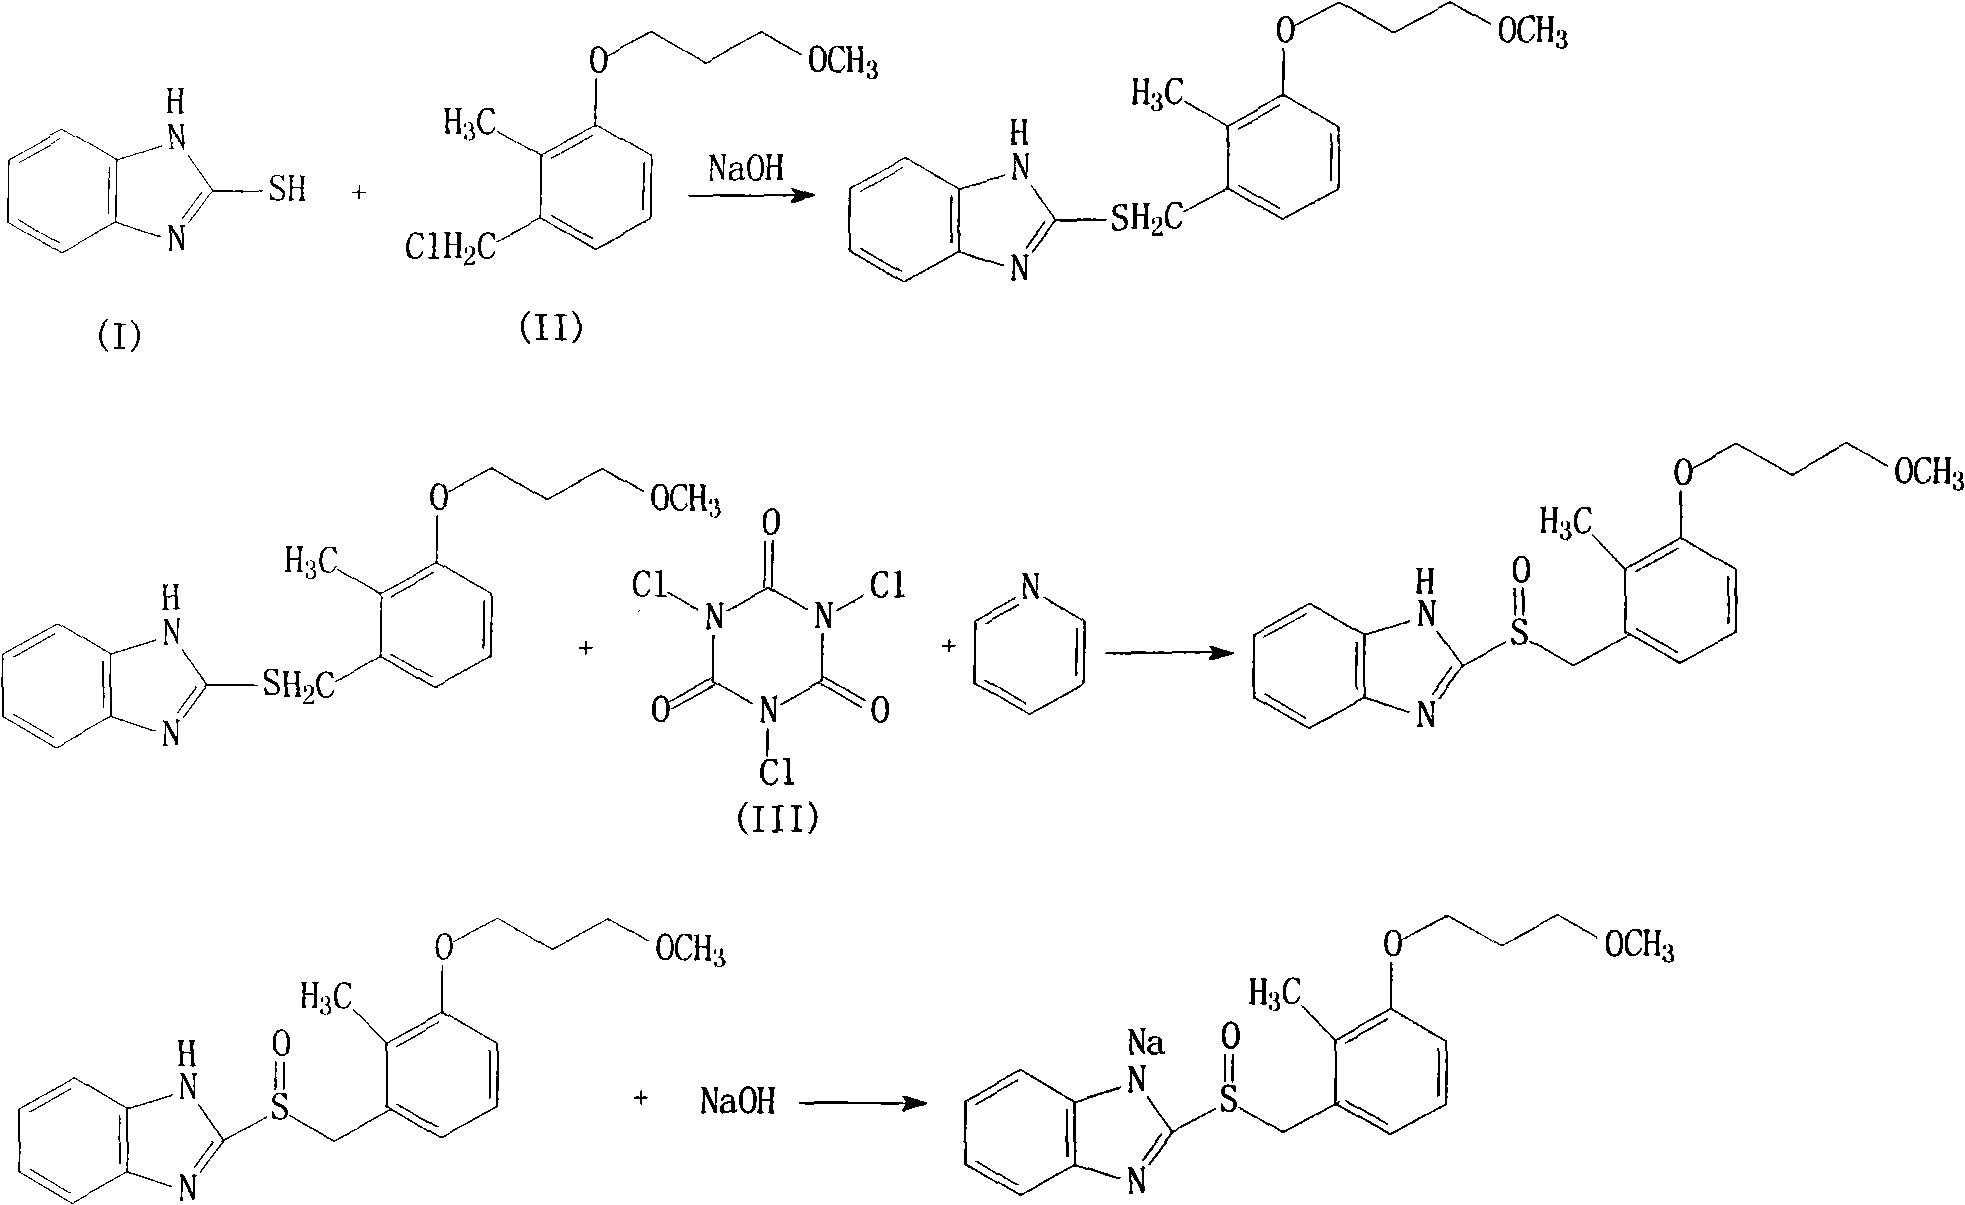 Rabeprazole sodium compound and novel preparation method thereof